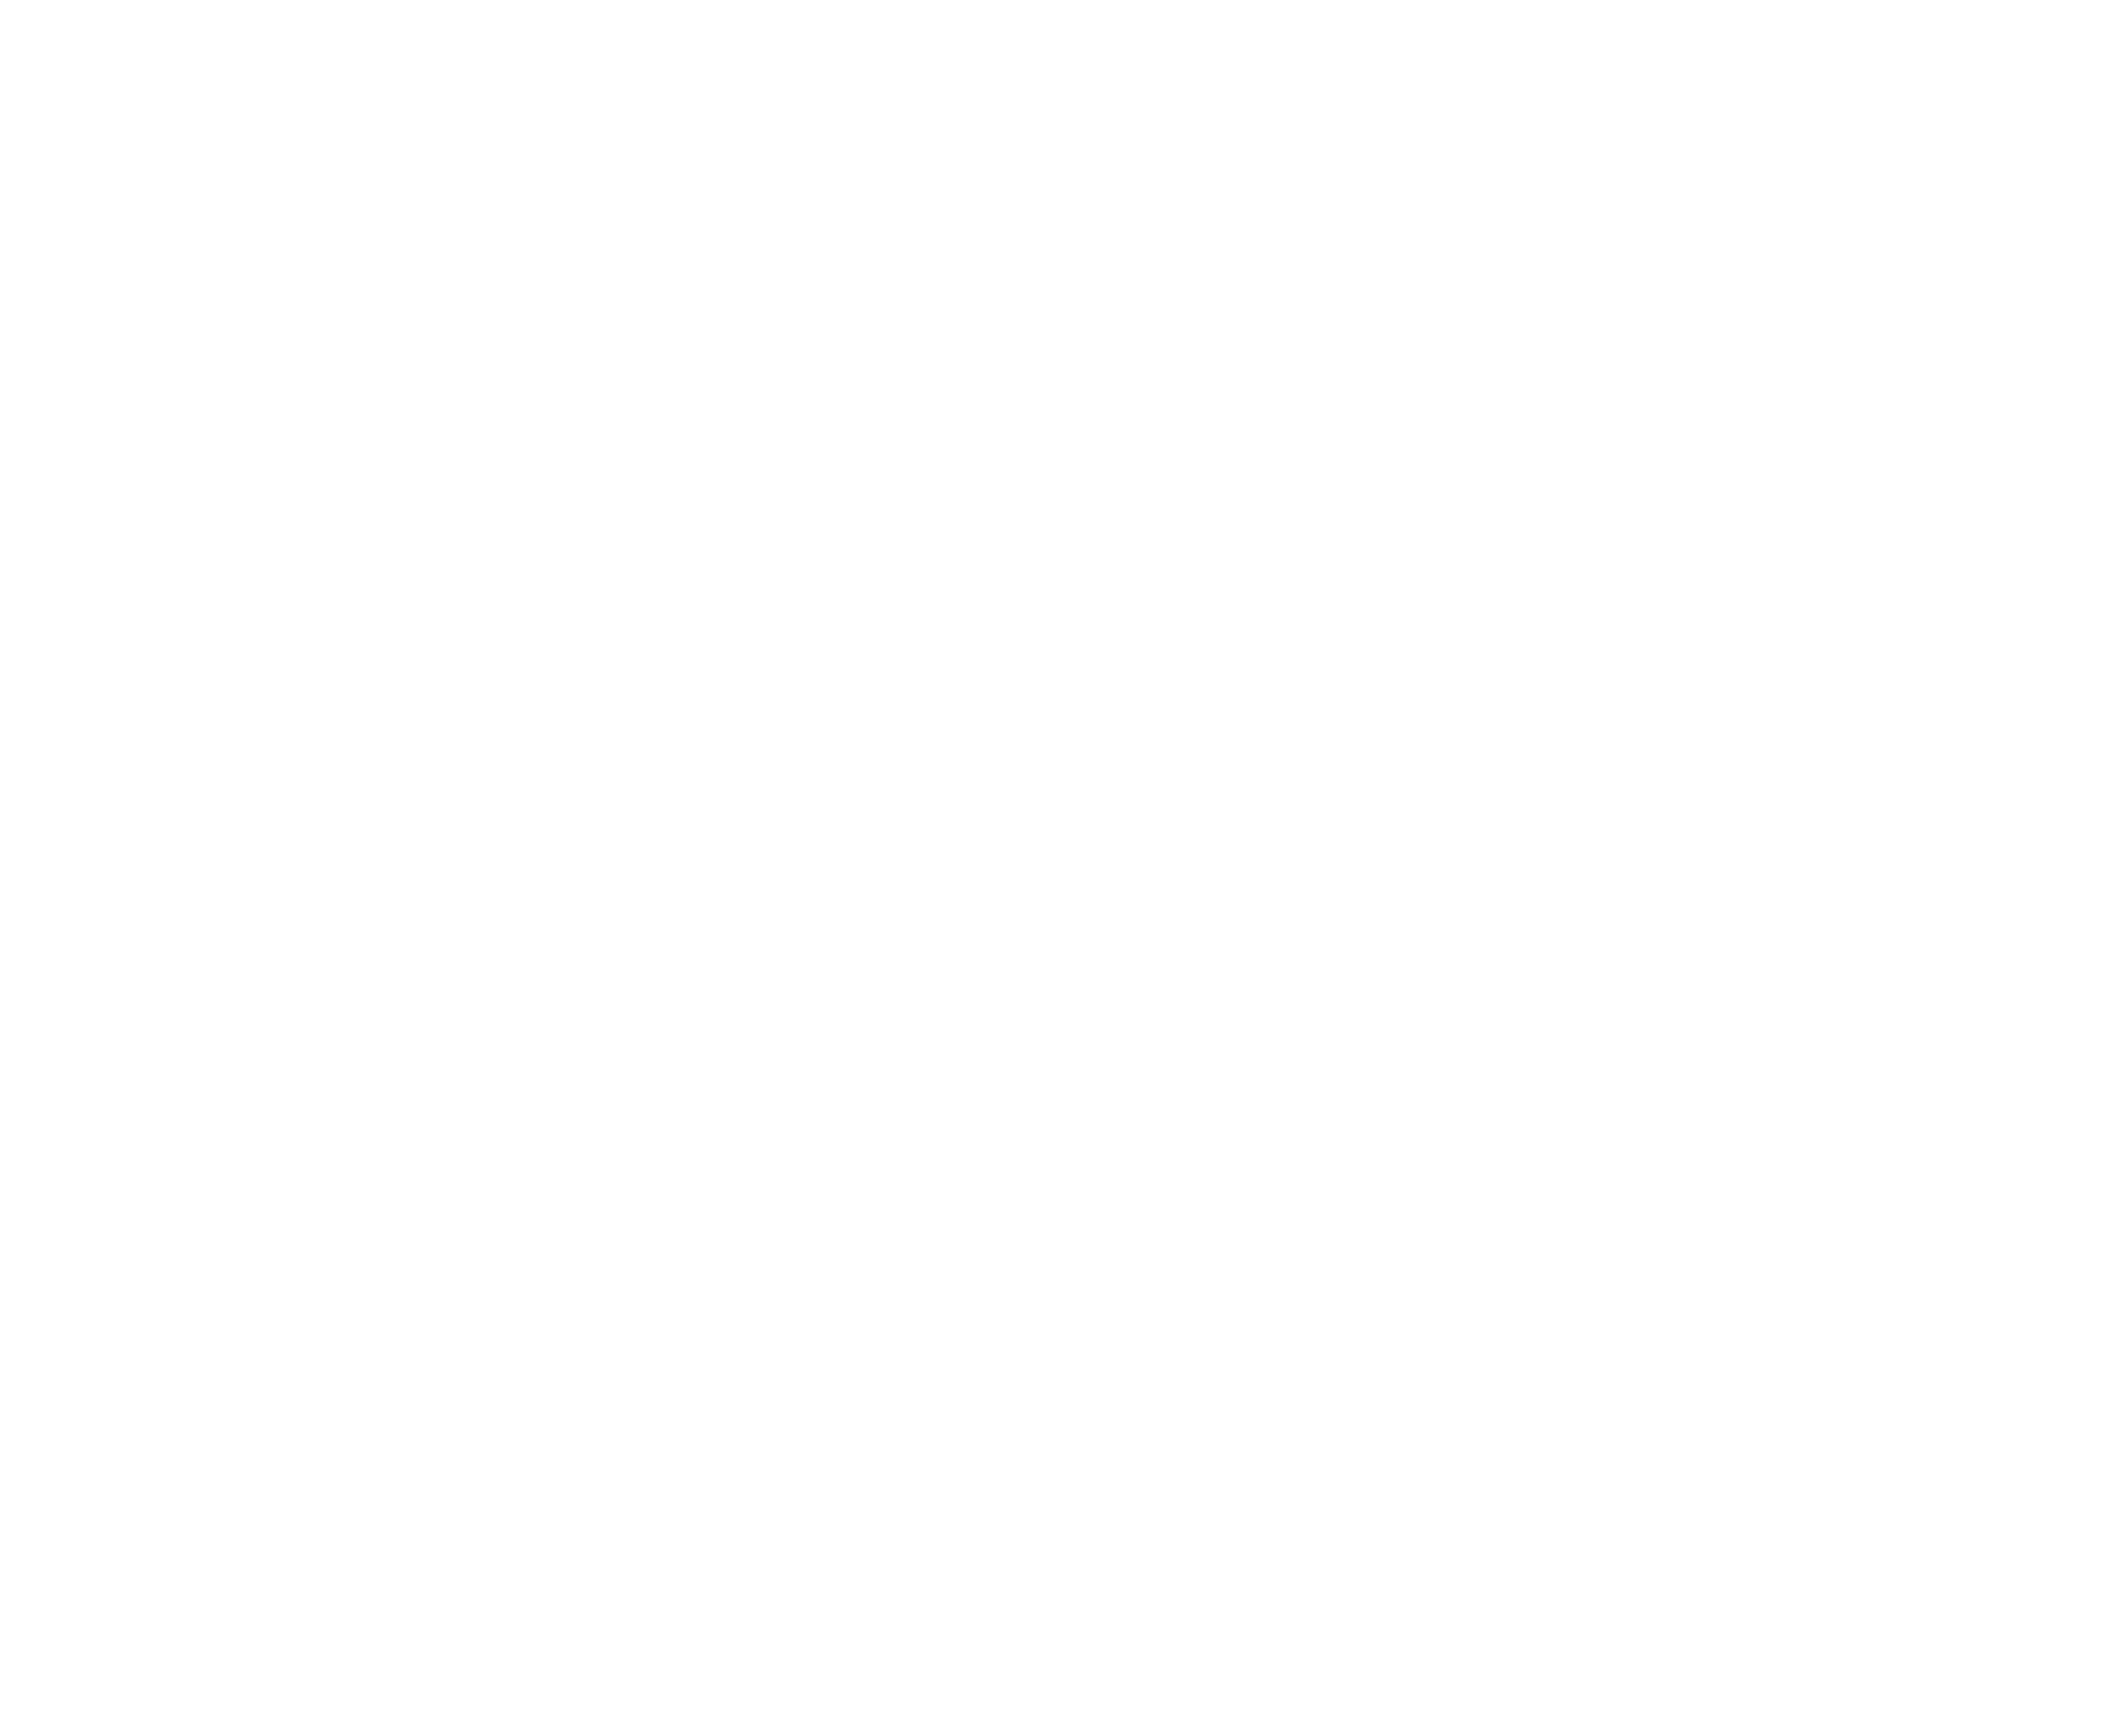 White mm Logo - M and m Logos